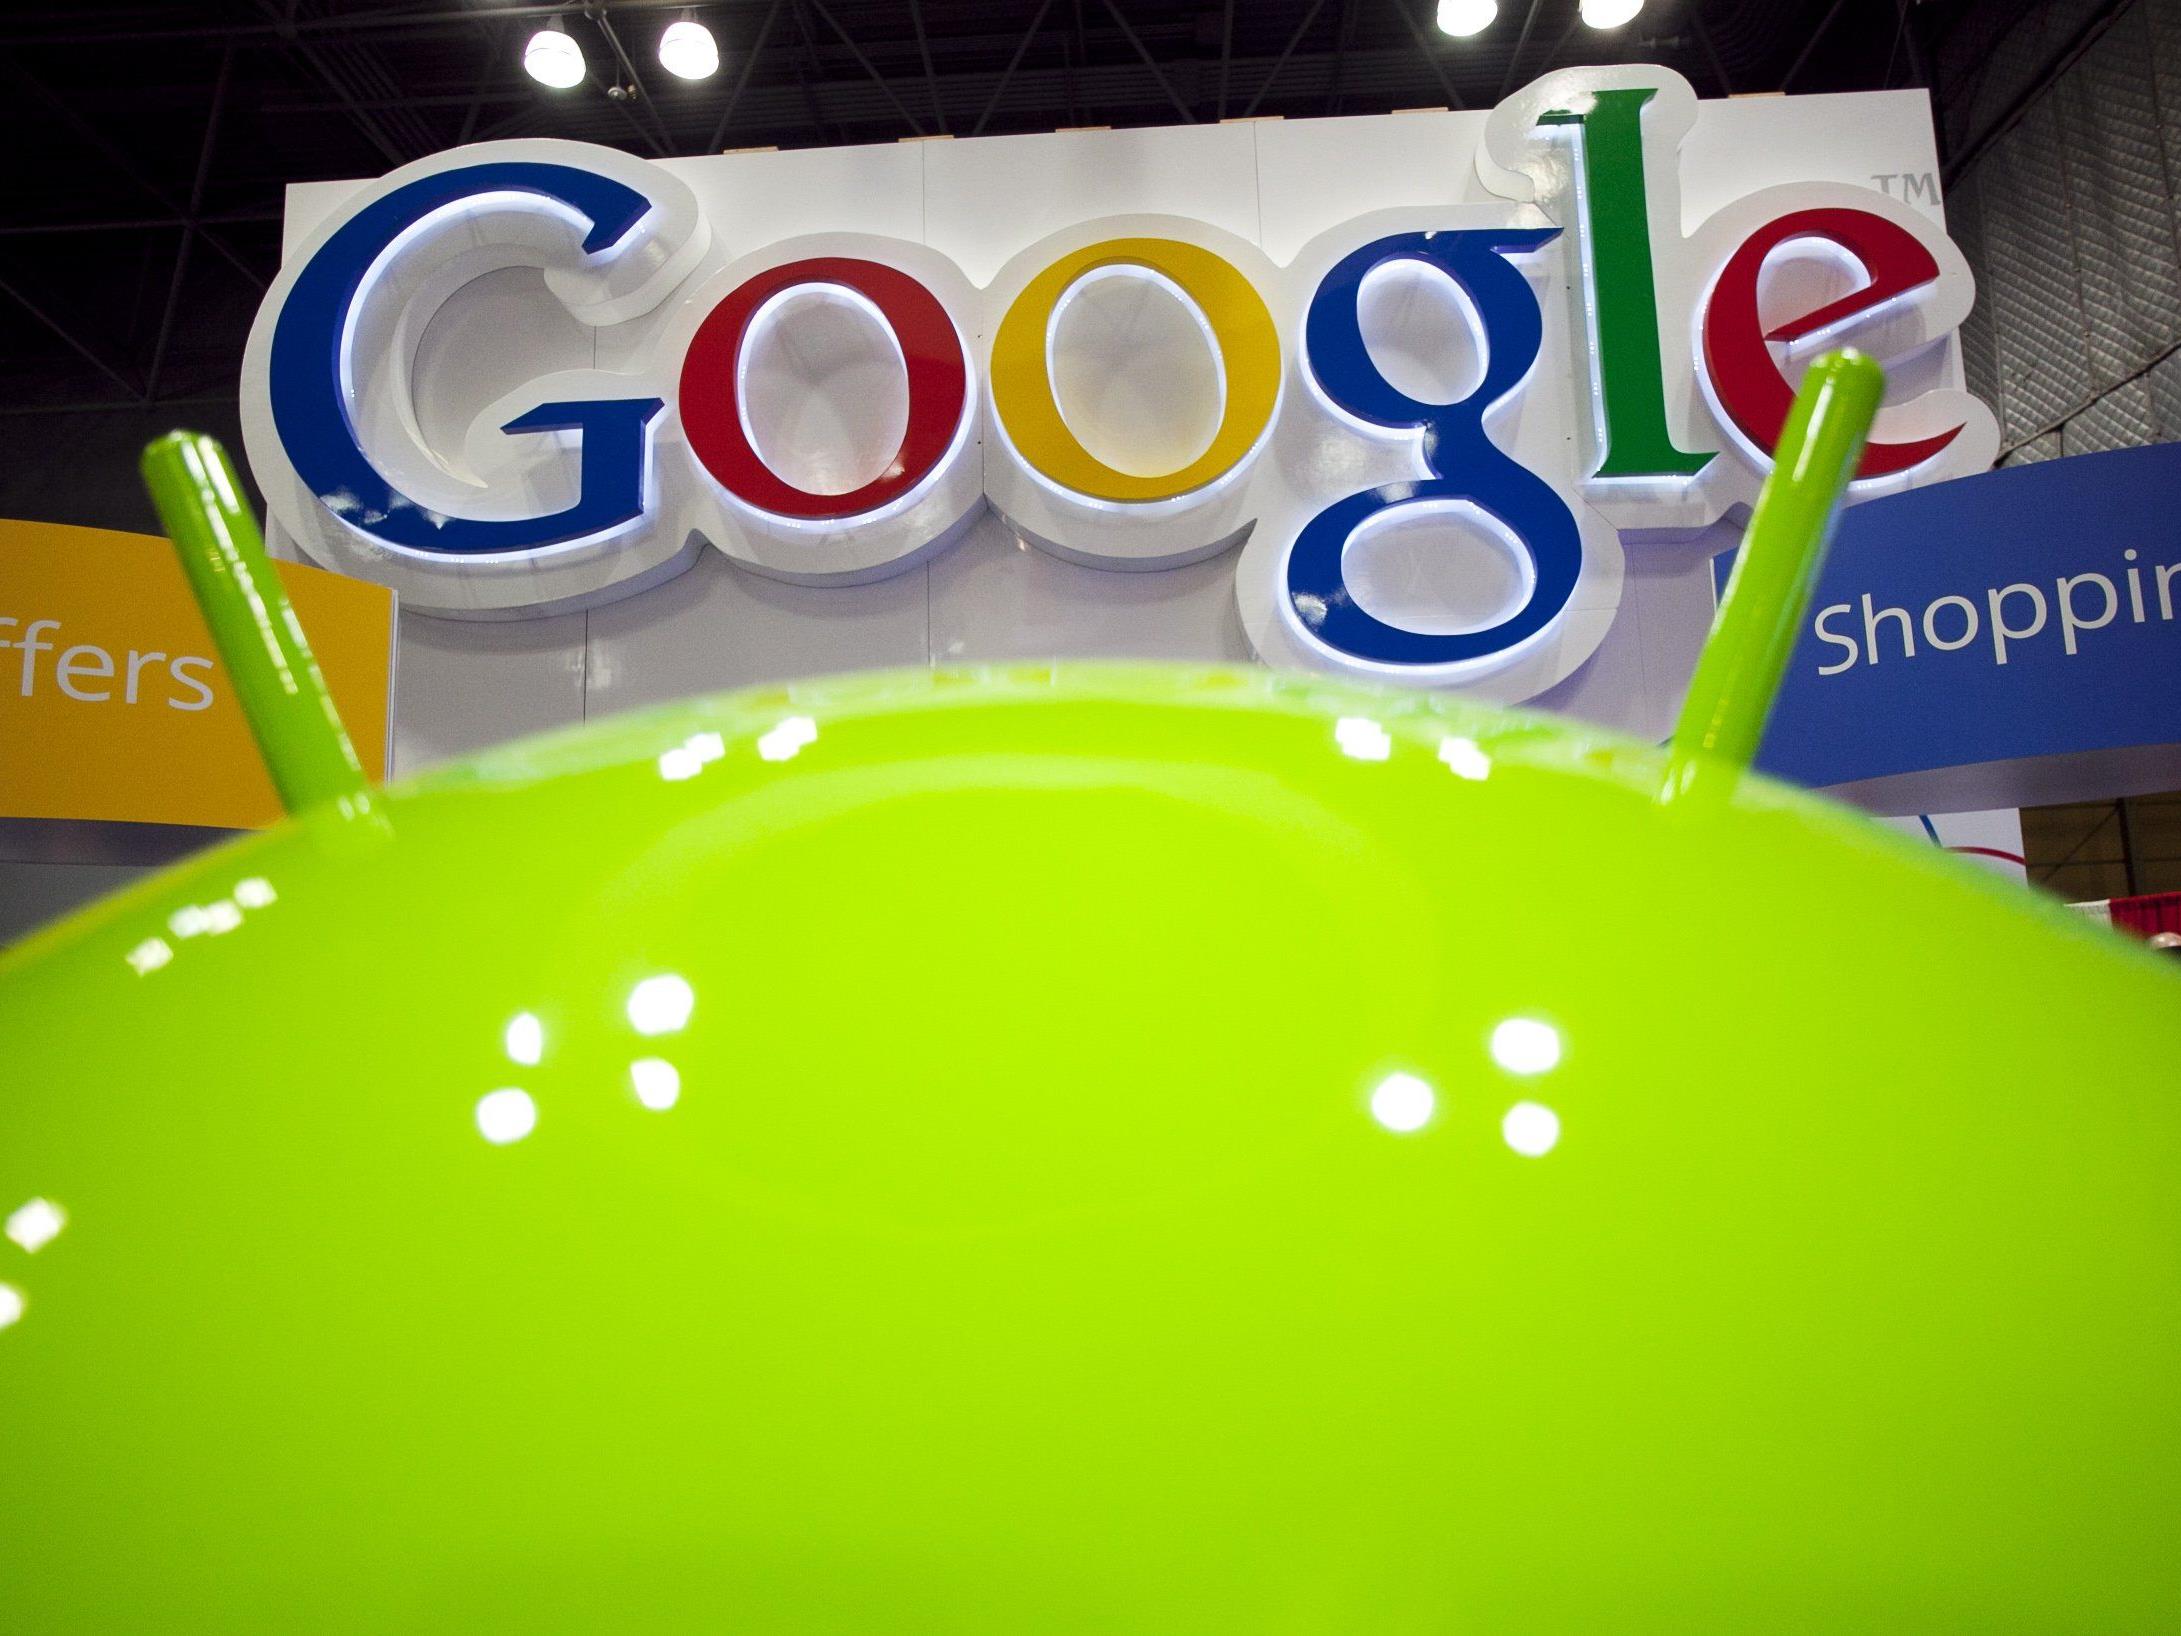 Google verspricht regelmäßige SIcherheitsupdates , die Hersteller ziehen nach.